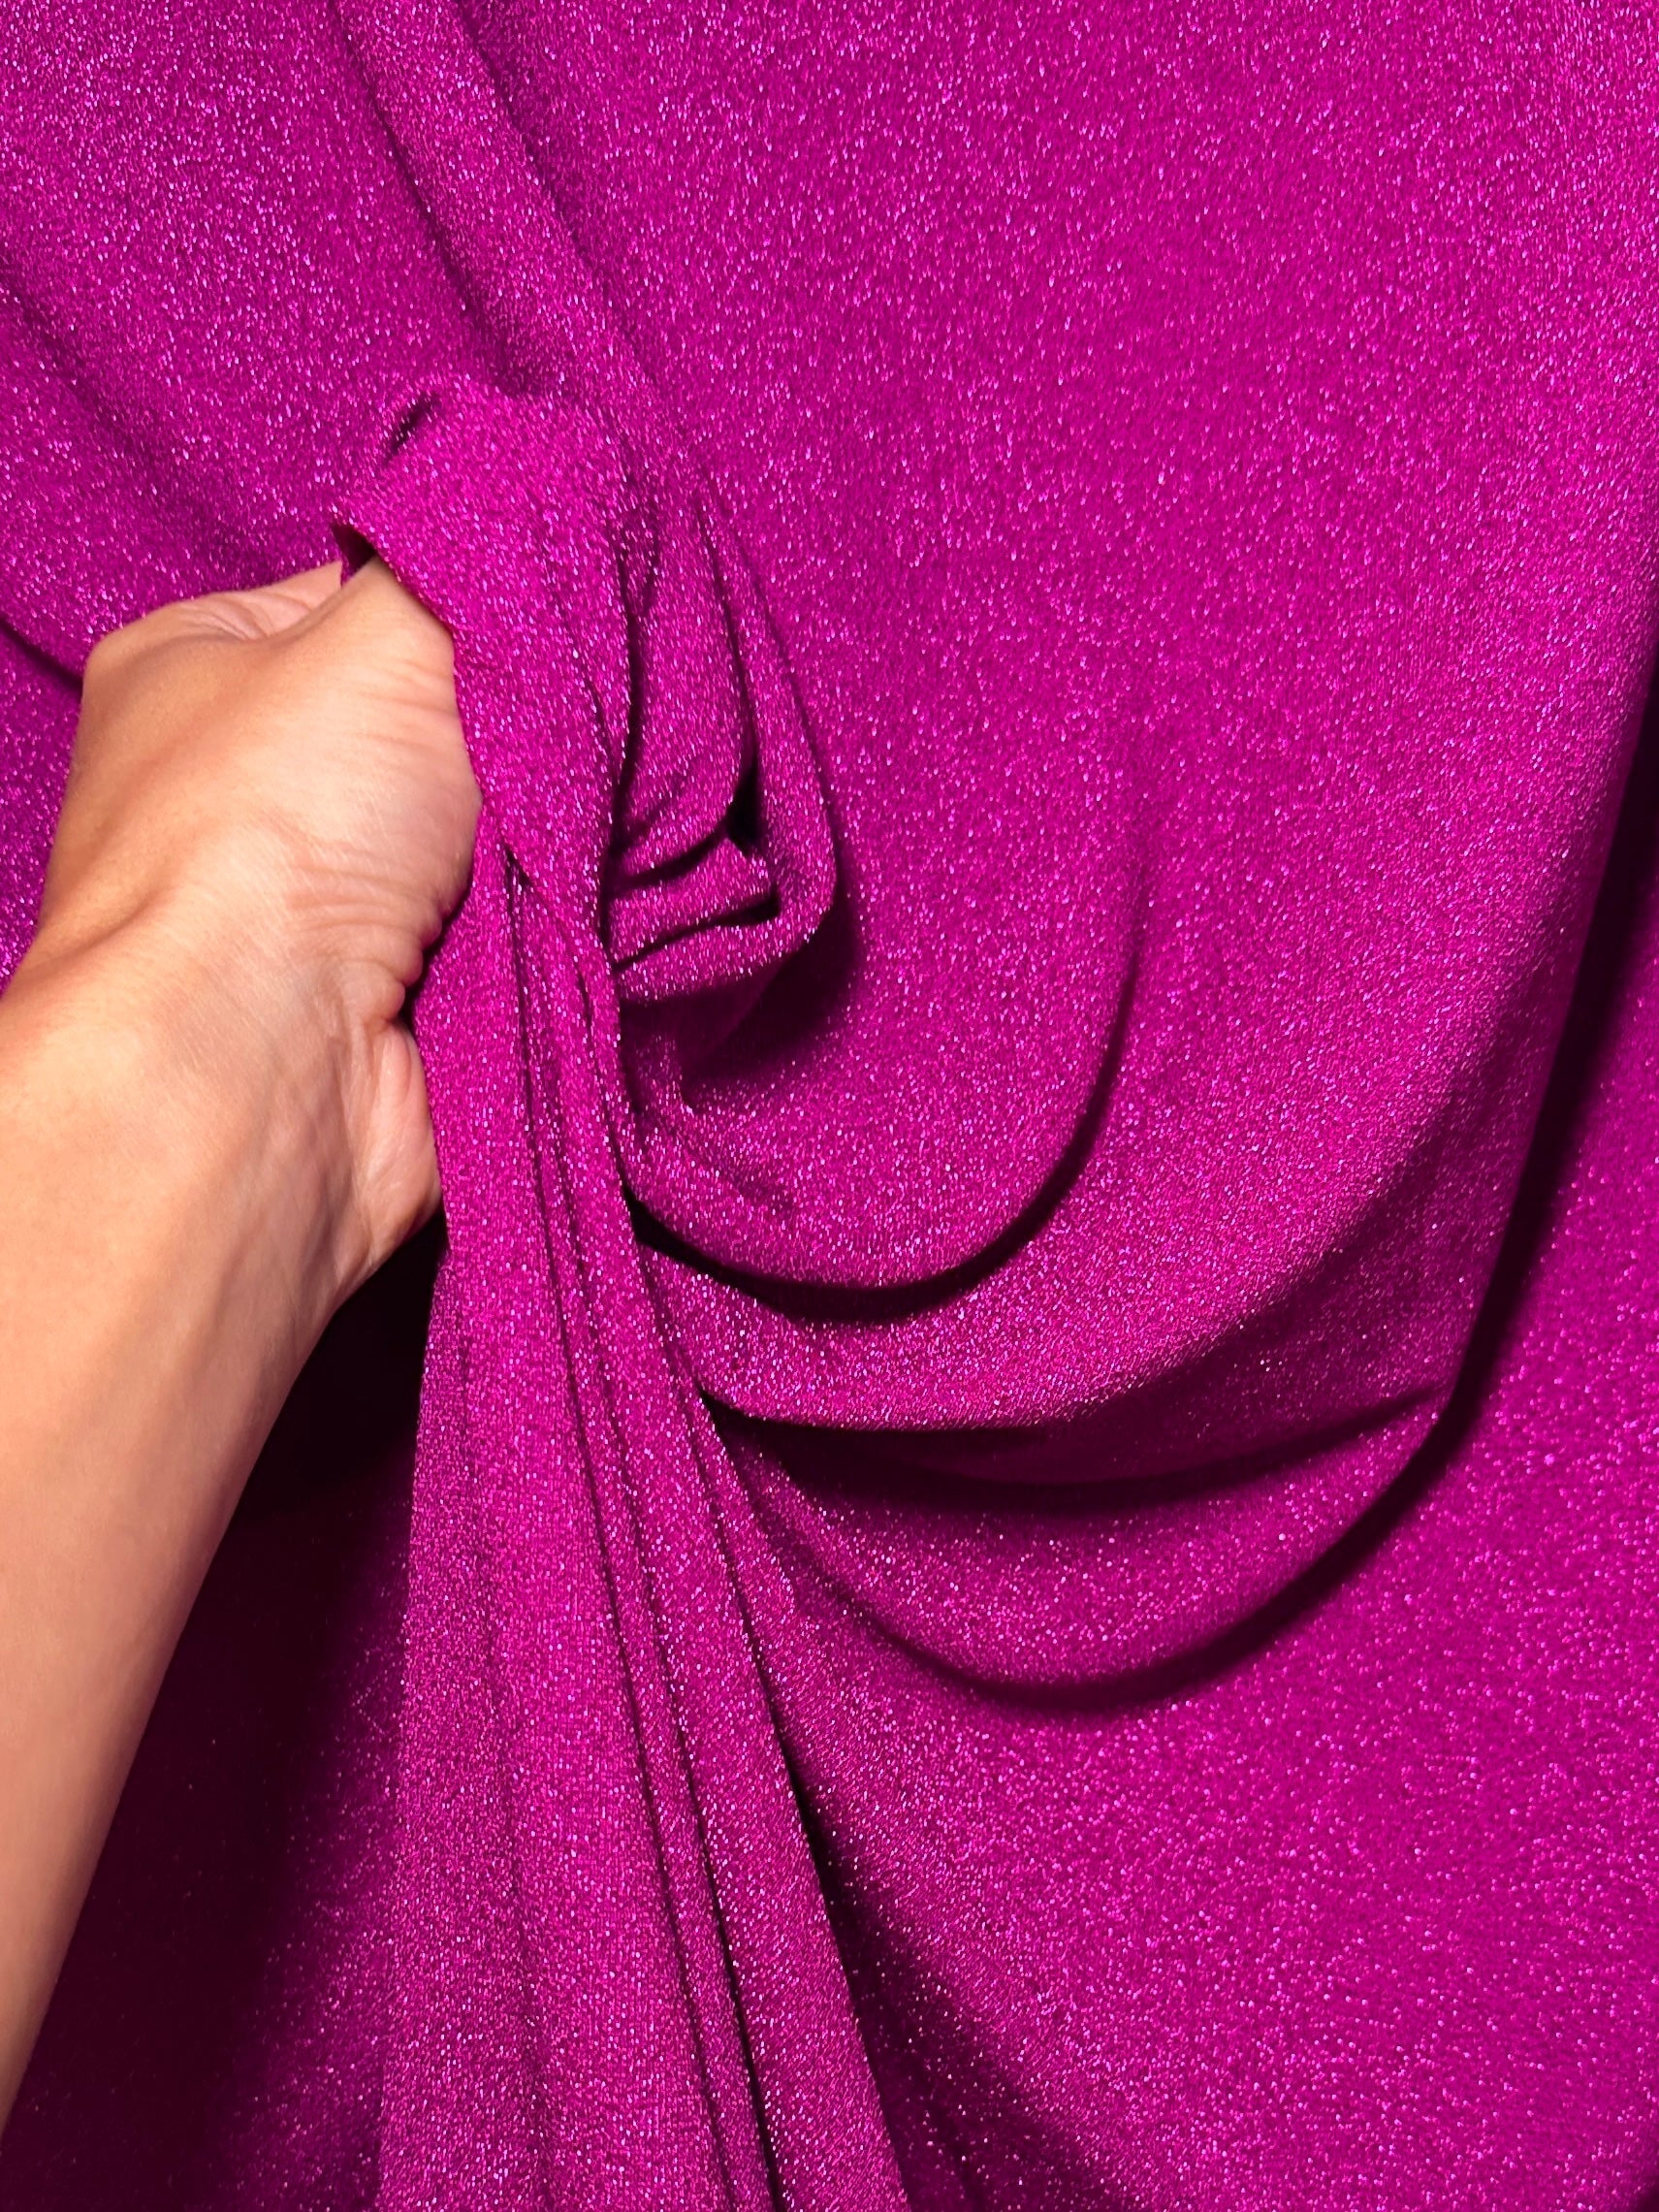 magenta spandex lurex knit, purple Lurex Knit, dark purple Lurex Knit, Lurex Knit for woman, Lurex Knit for bride, Lurex Knit in low price, Lurex Knit on discount, premium quality Lurex Knit